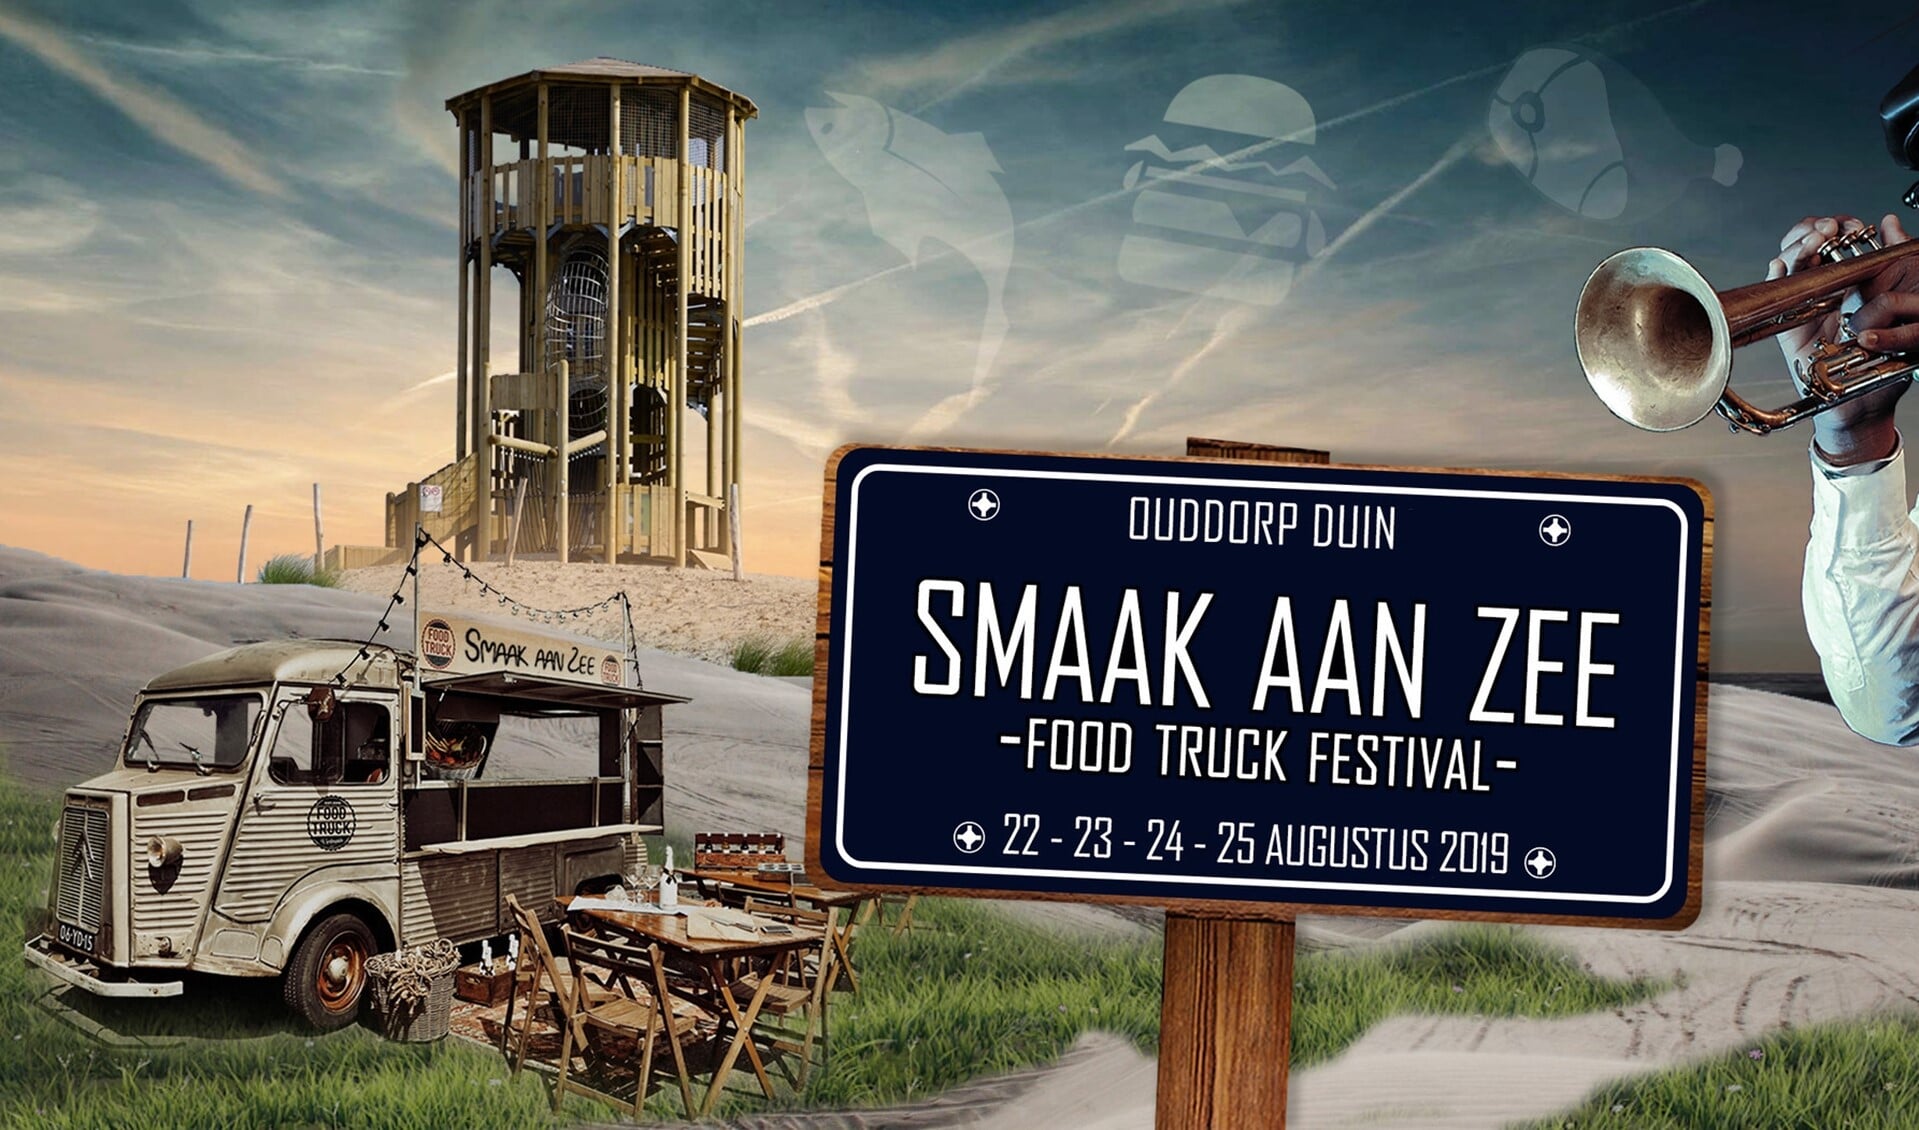 Voor het volledige programma zie www.smaakaanzee.nl of de Facebookpagina van Ouddorp Duin (facebook.com/ouddorpduin). 